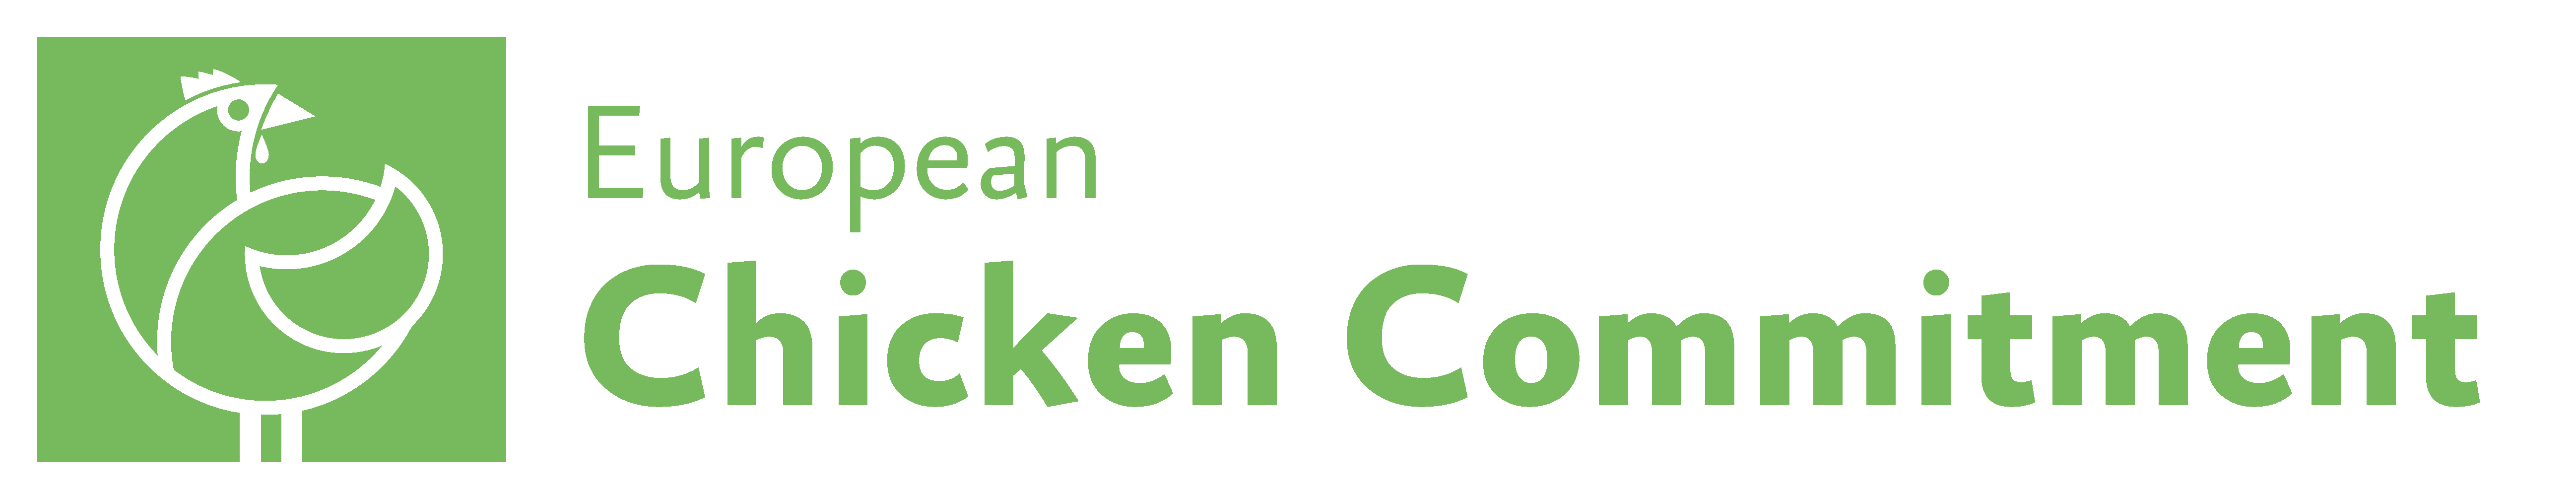 European Chicken Commitment Logo